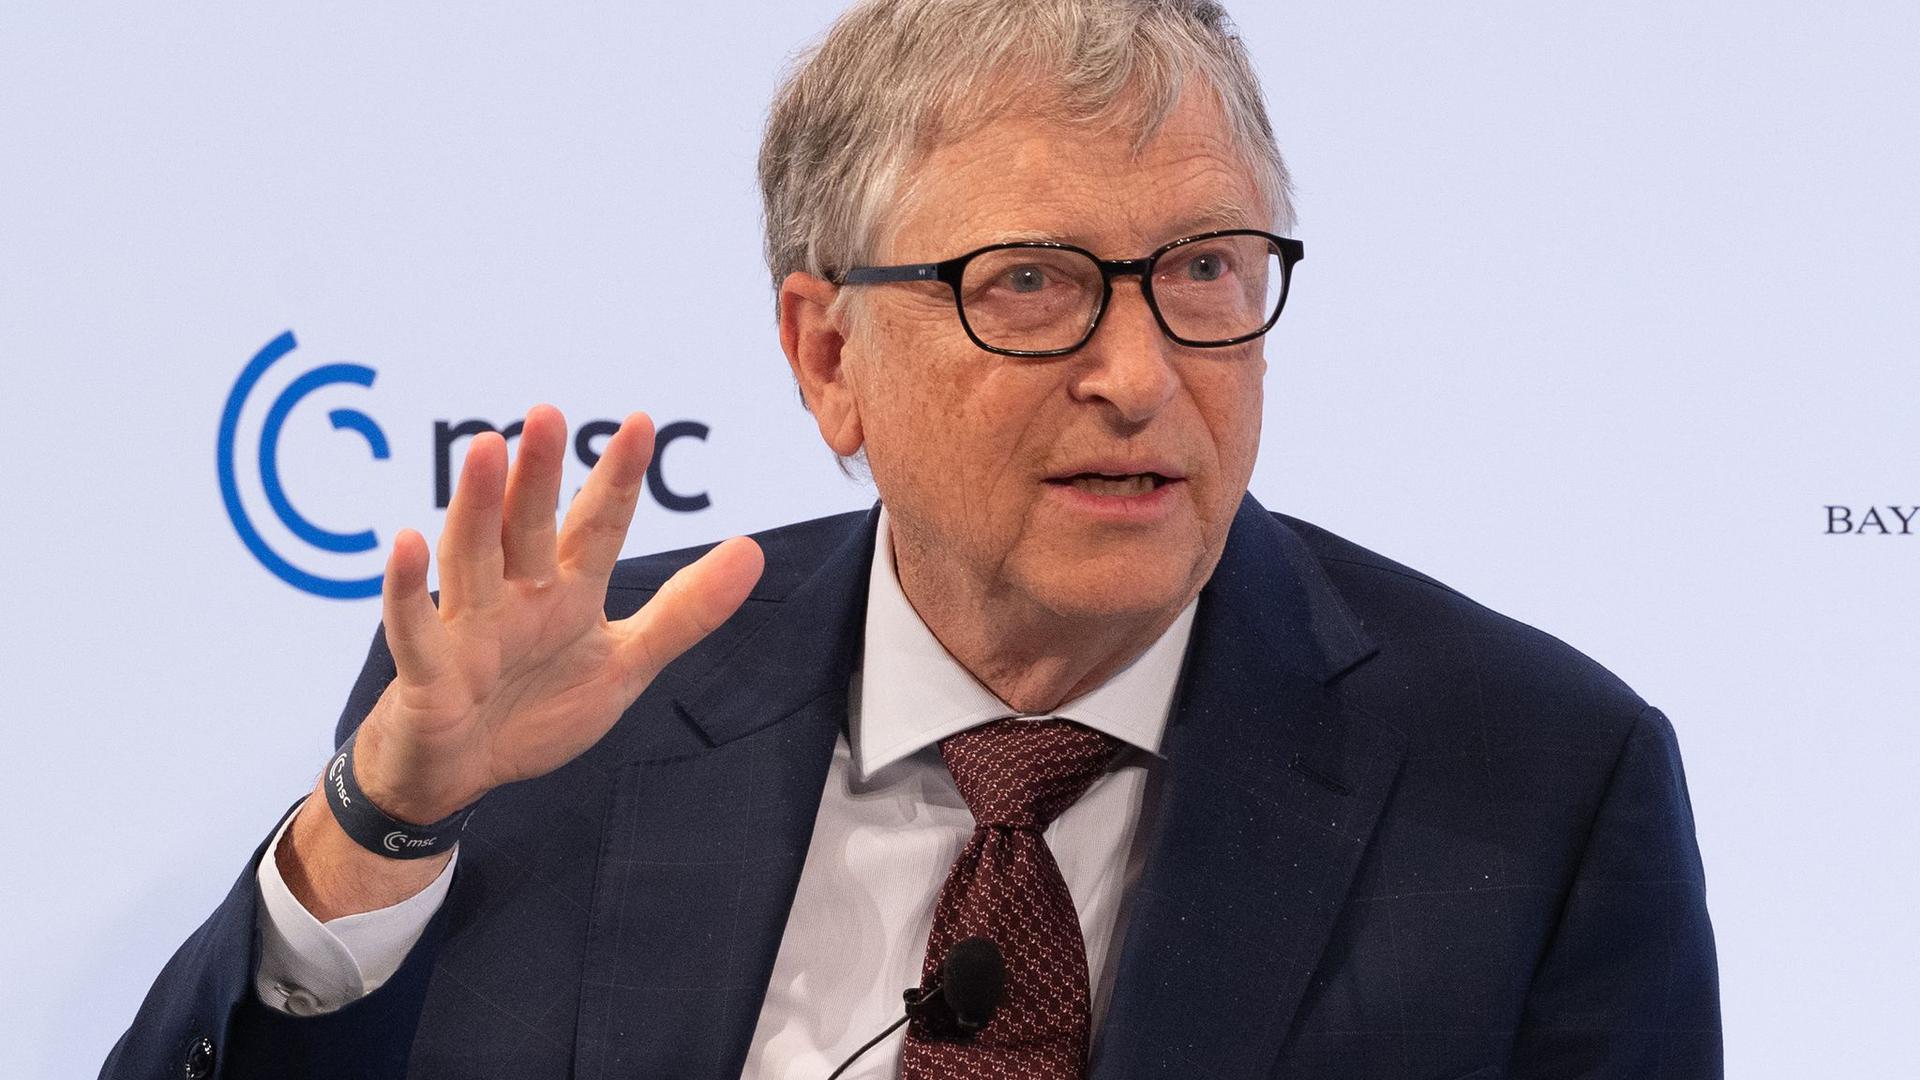 Bill Gates trennt sich von seinen Milliarden.